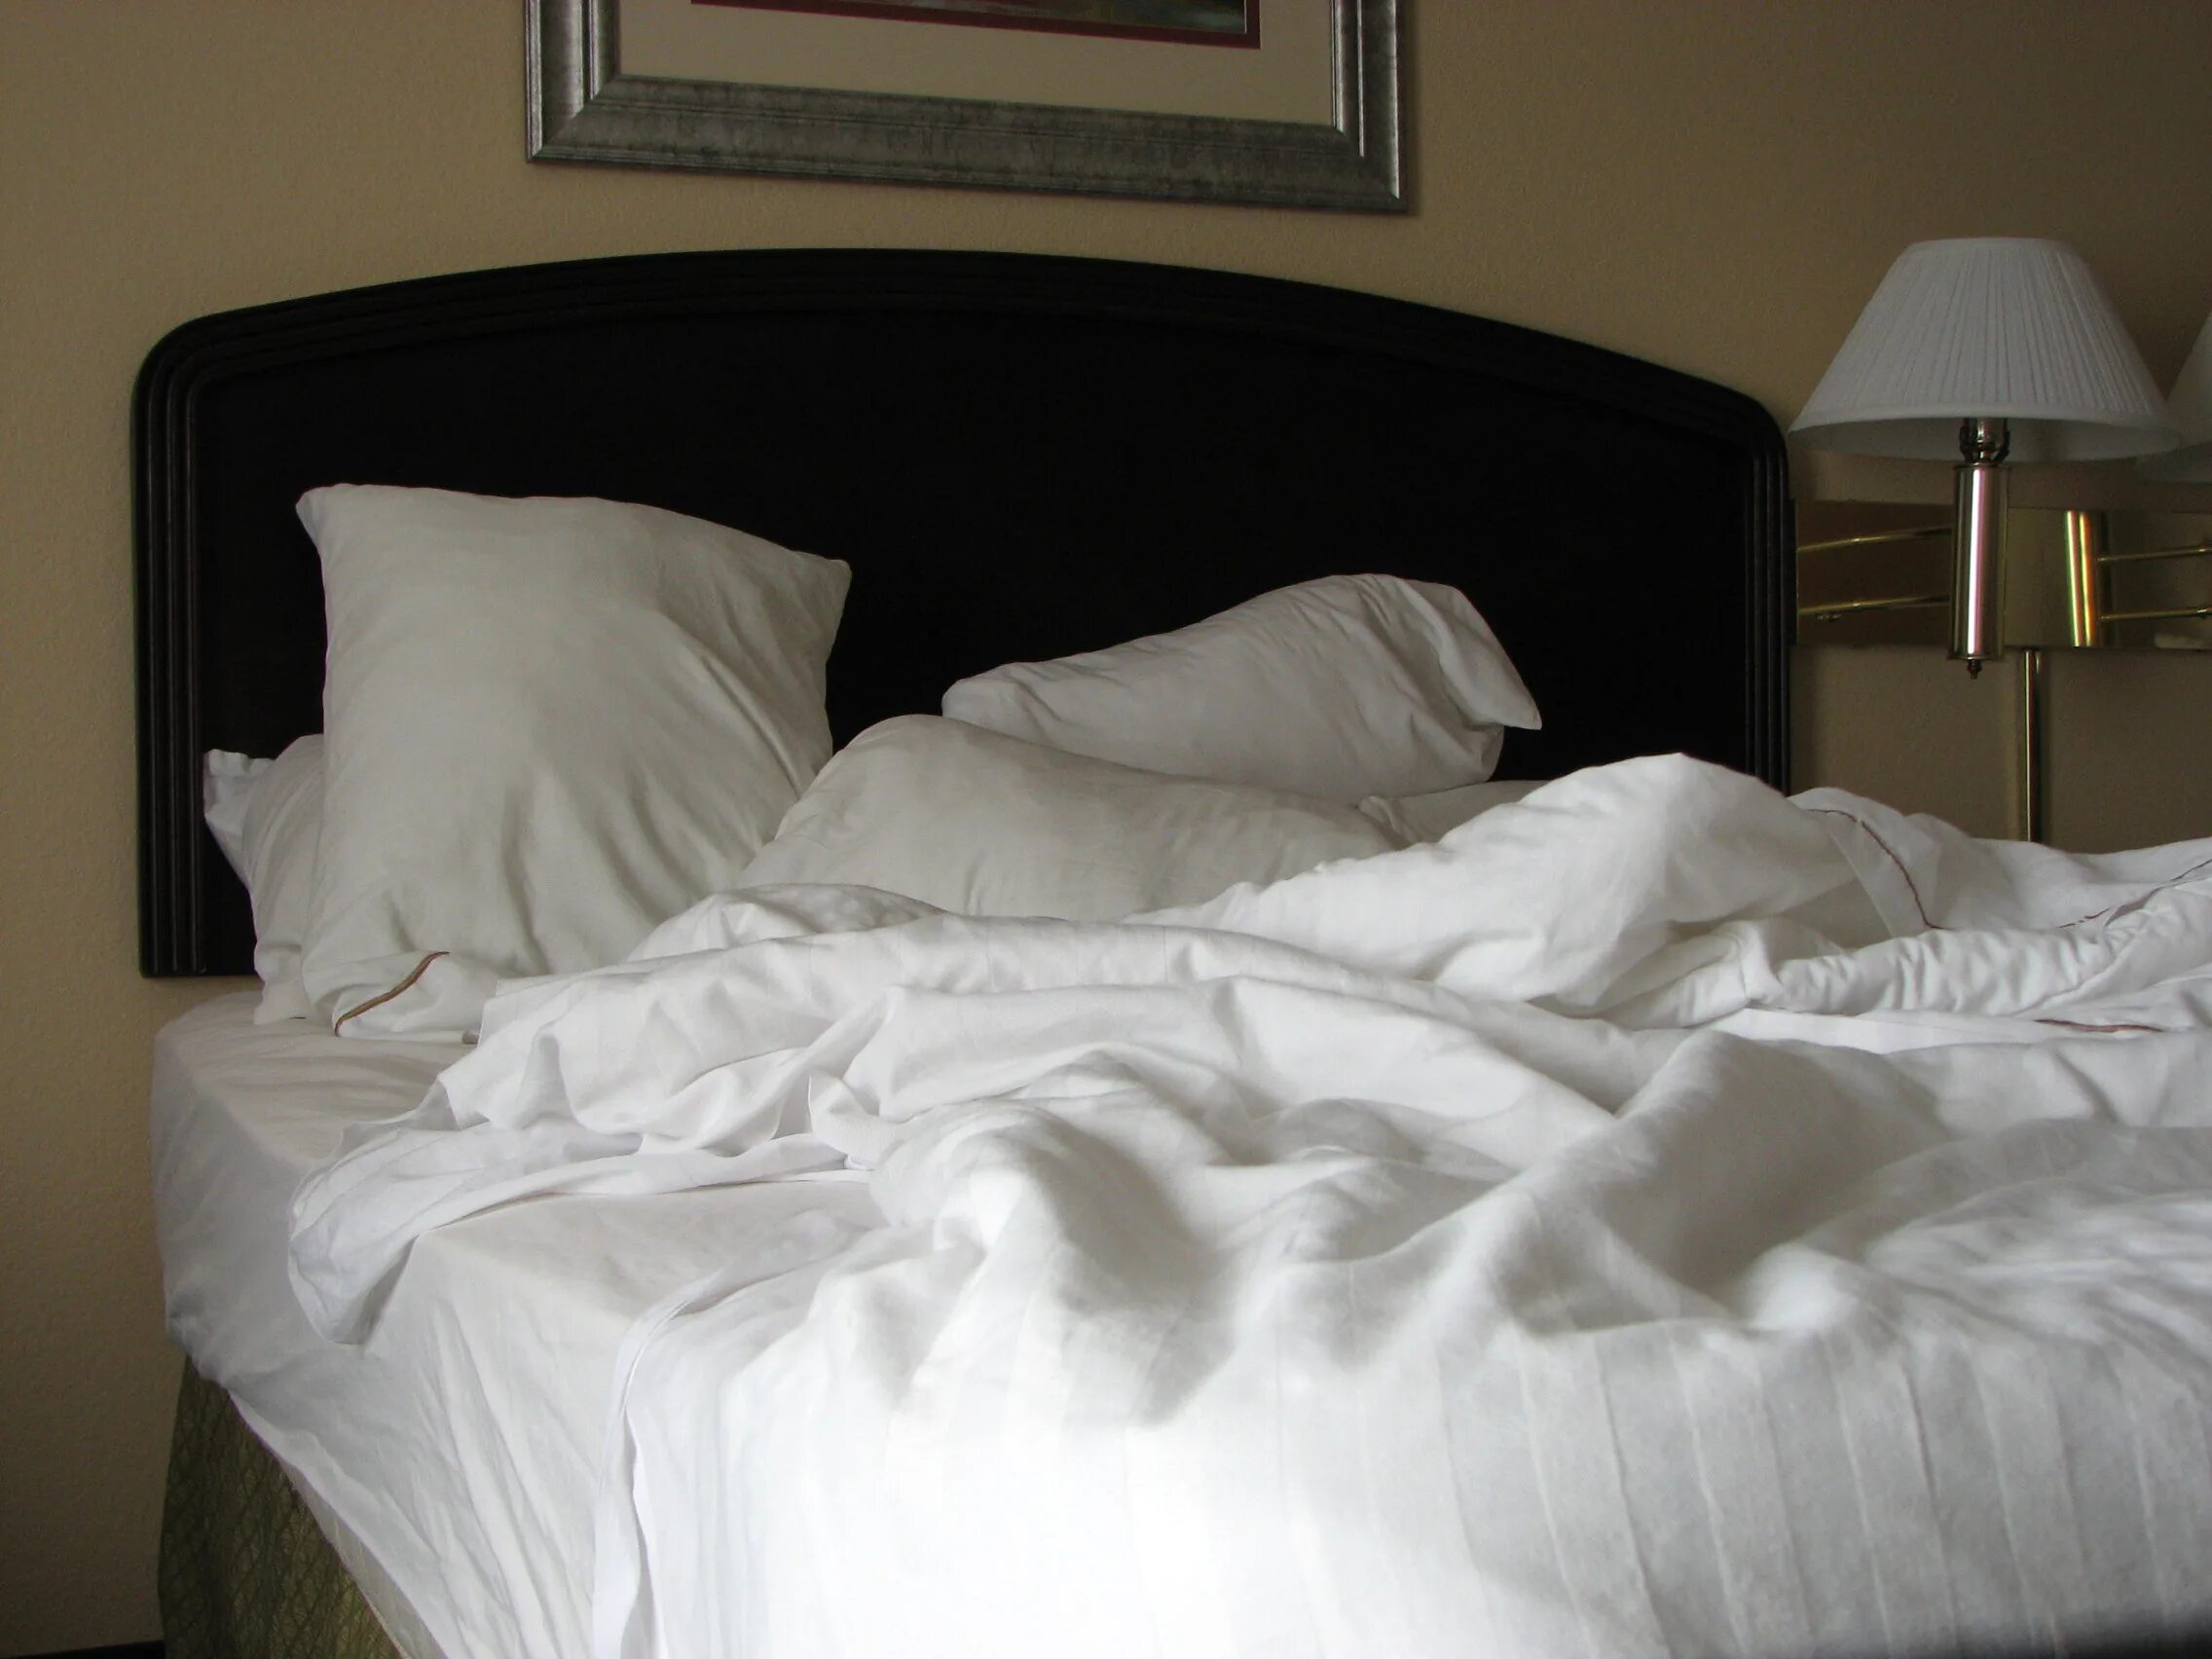 Незаправленная кровать. Неубранная кровать. Незаправленная кровать в отеле. Неубранная постель в отеле. Мачеха кровать отель сын